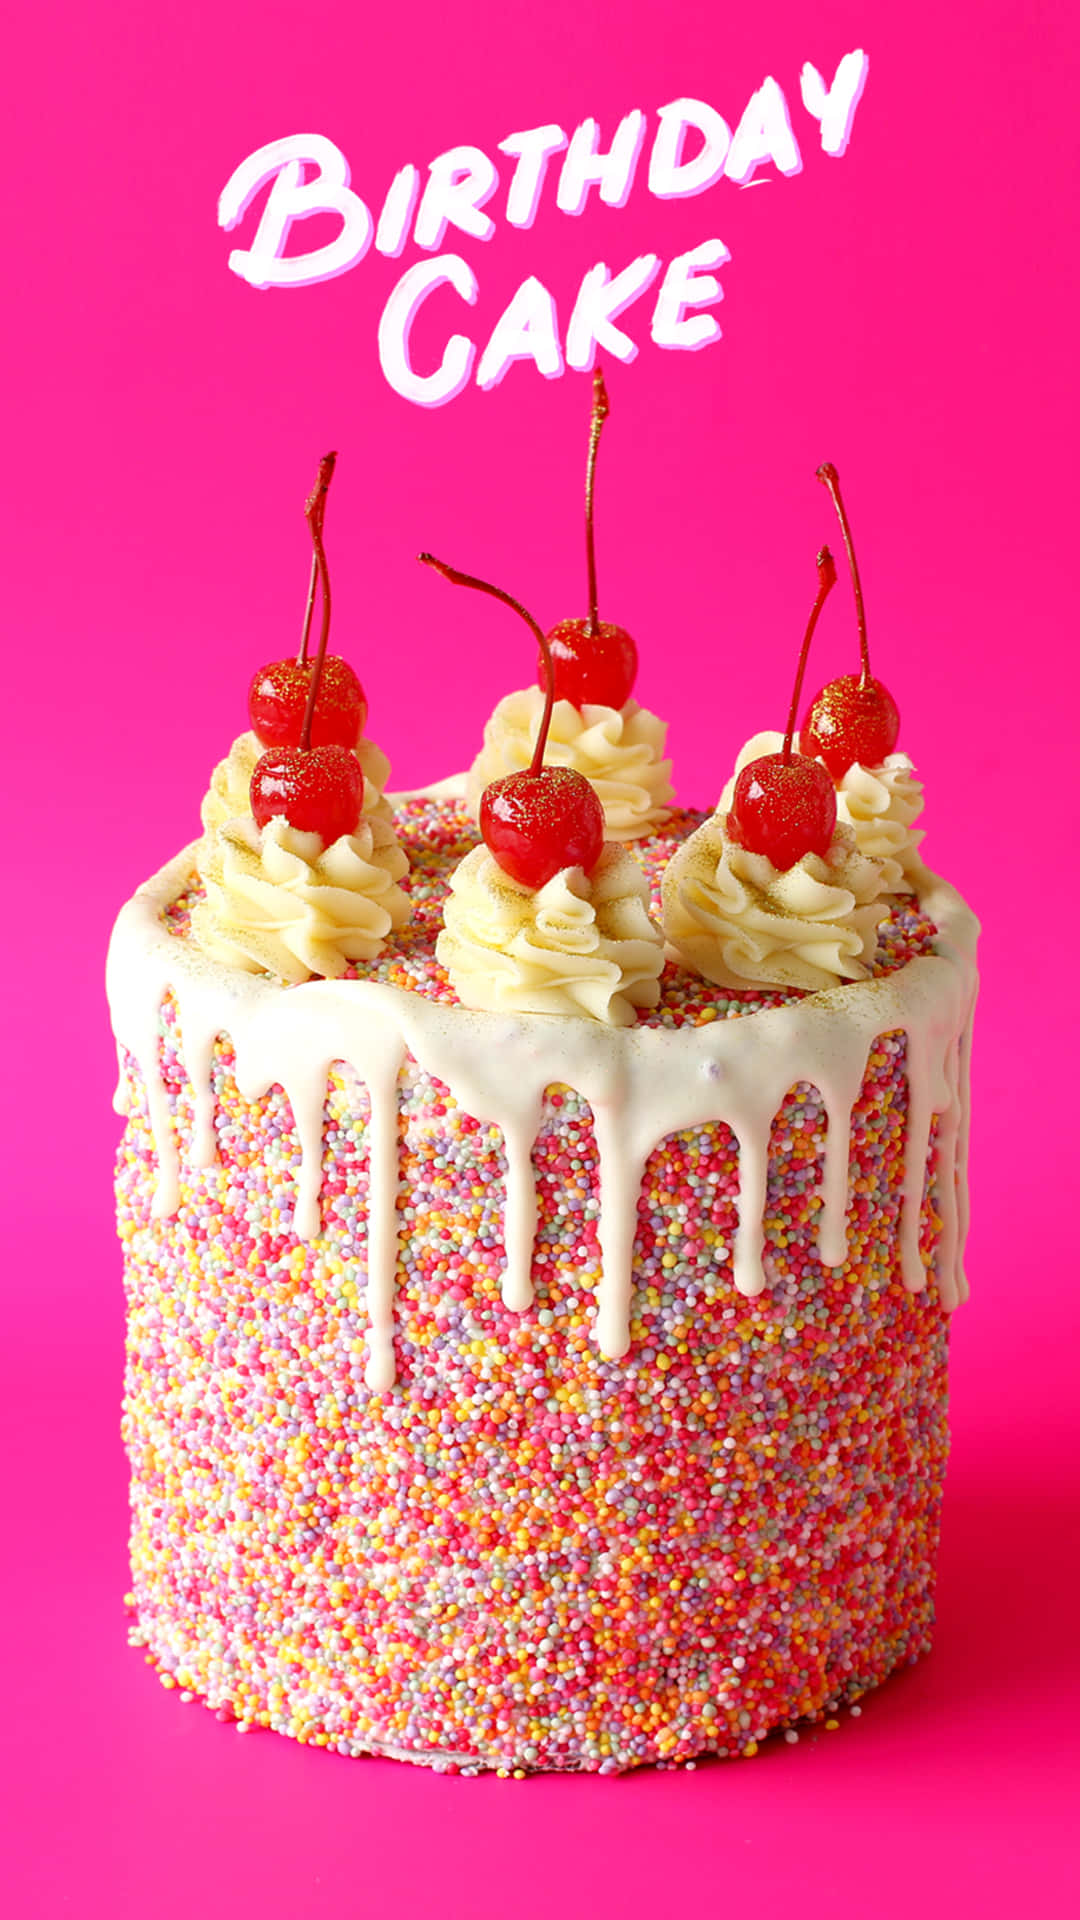 En fødselsdagskage med krymmel og kirsebær på en pink baggrund